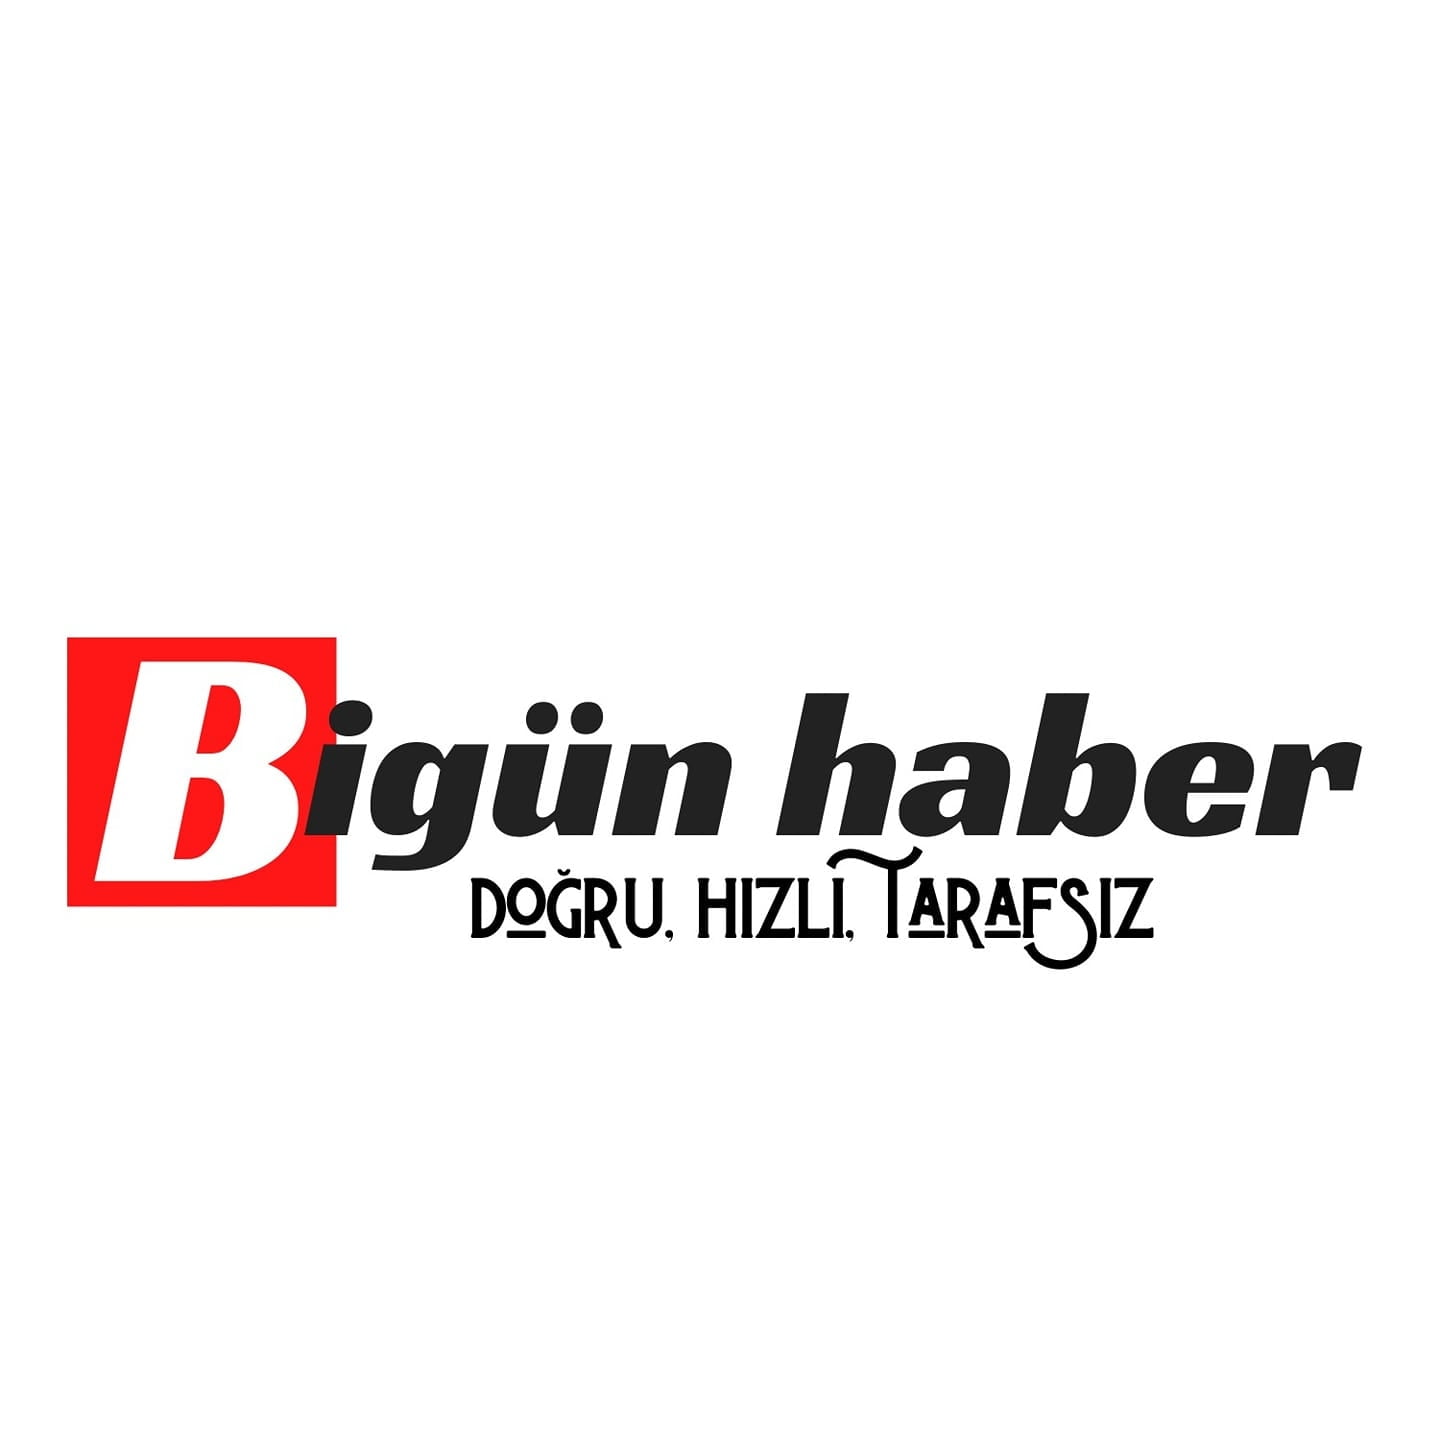 Habib Babar Azerbaycan’a demir attı